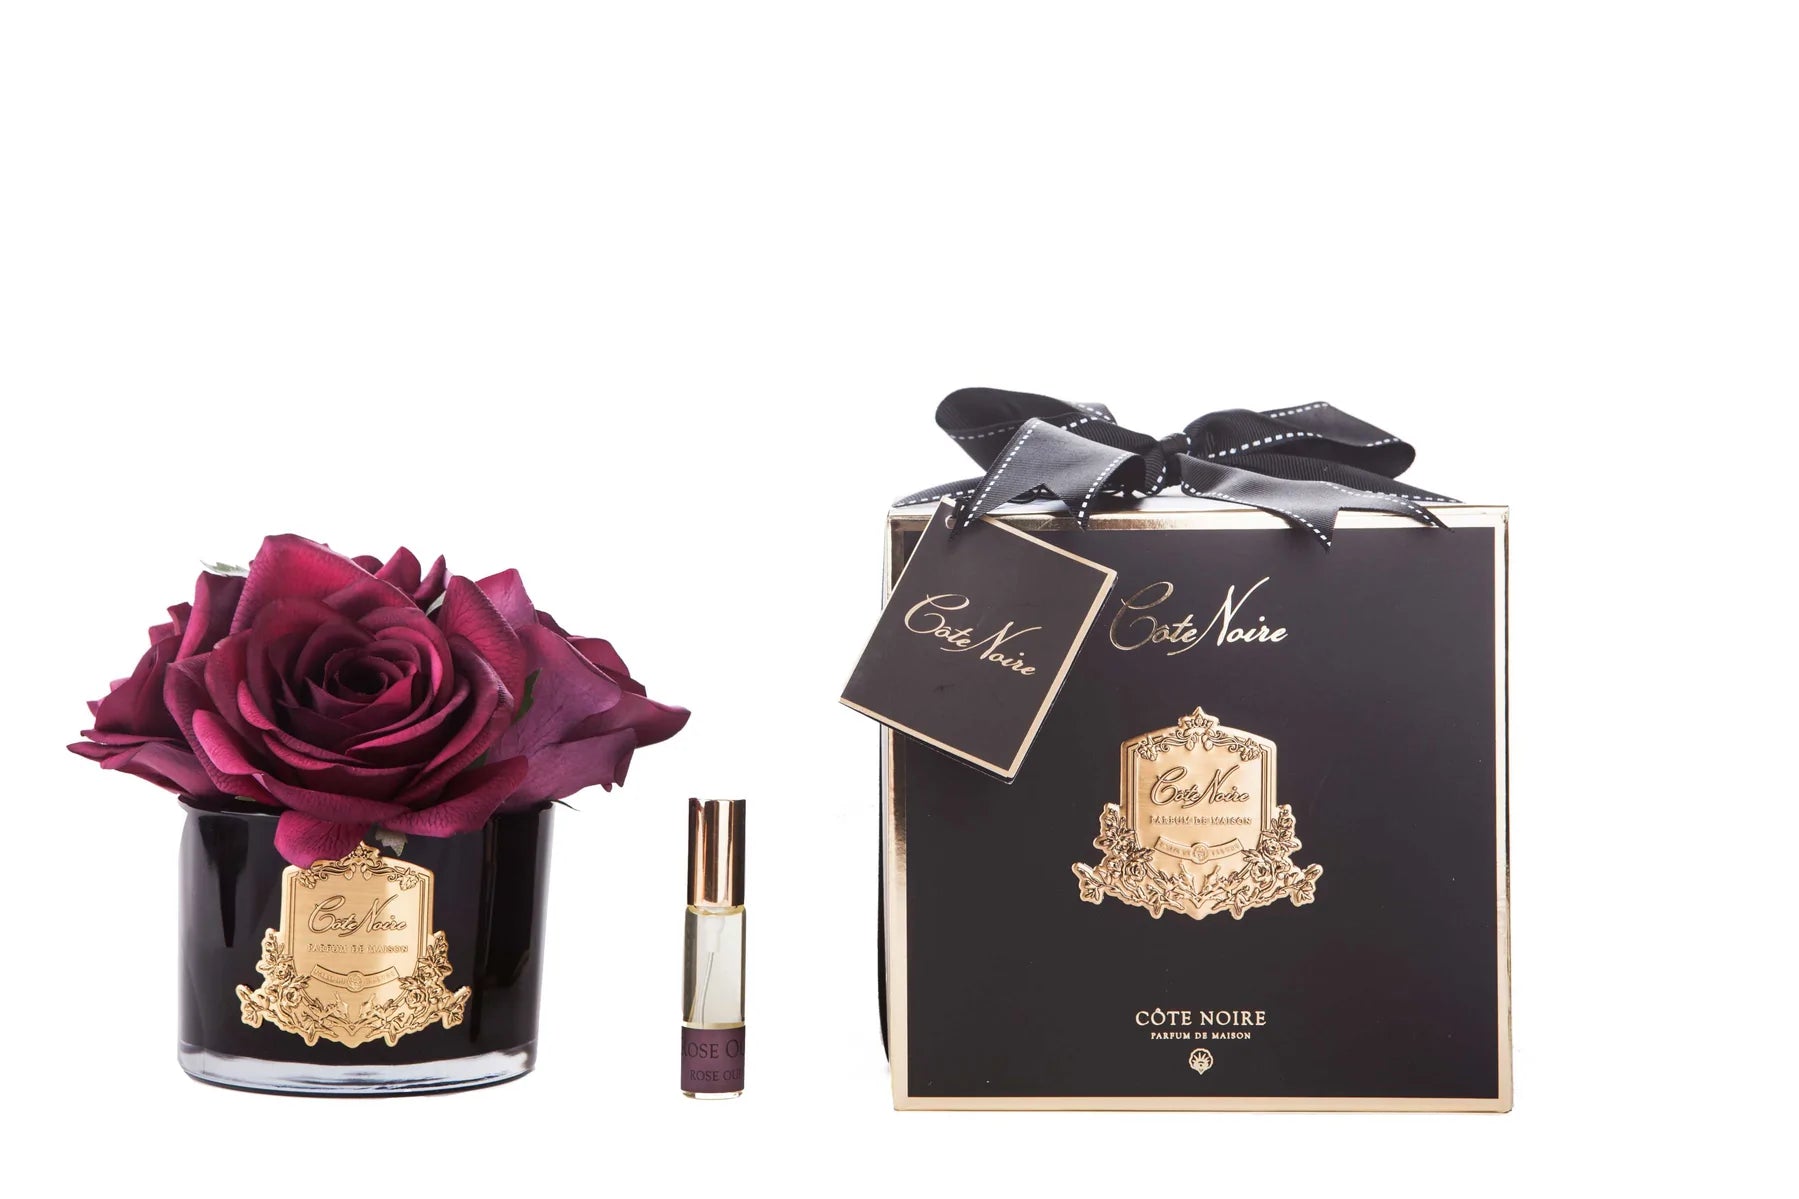 karminrote rosen in schwarzem glas mit goldenem emblem, daneben das duftspray und eine geschenkverpackung mit schleife.